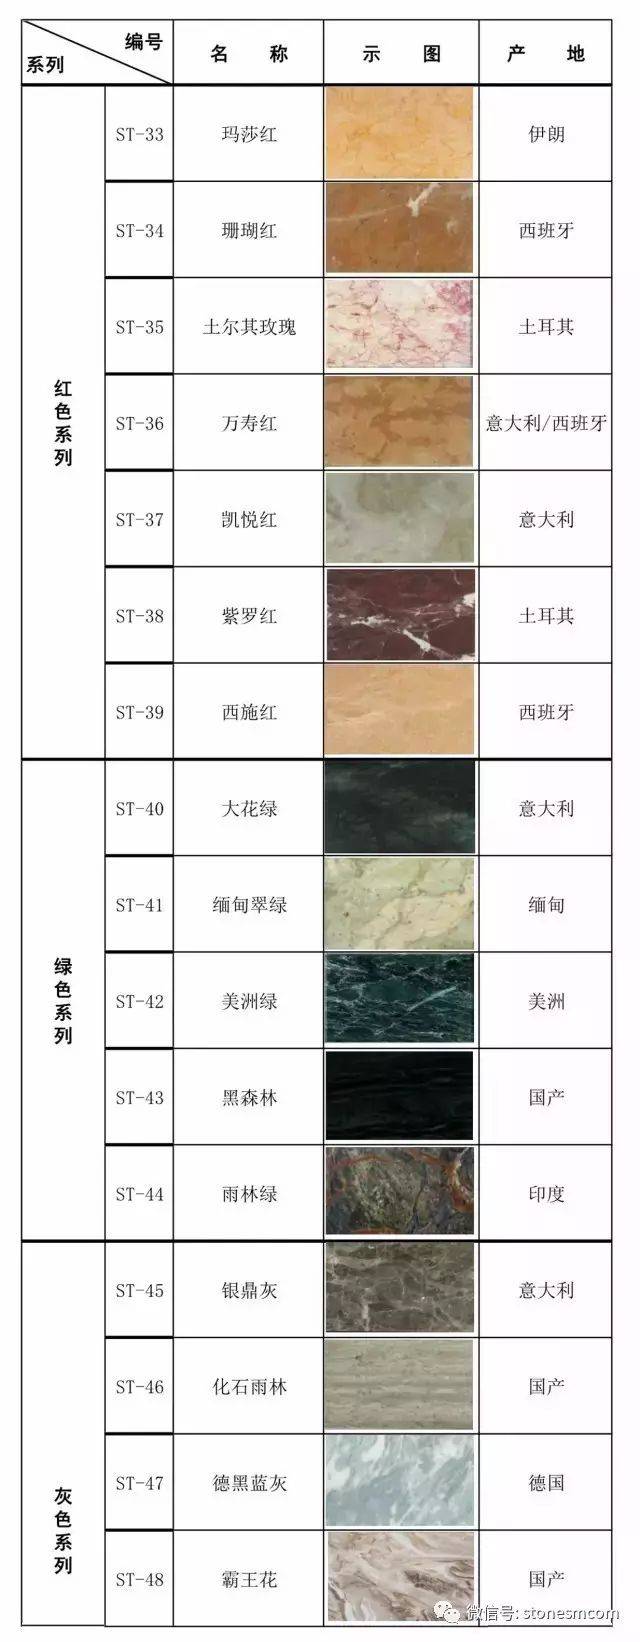 市面上常见石材品种列表